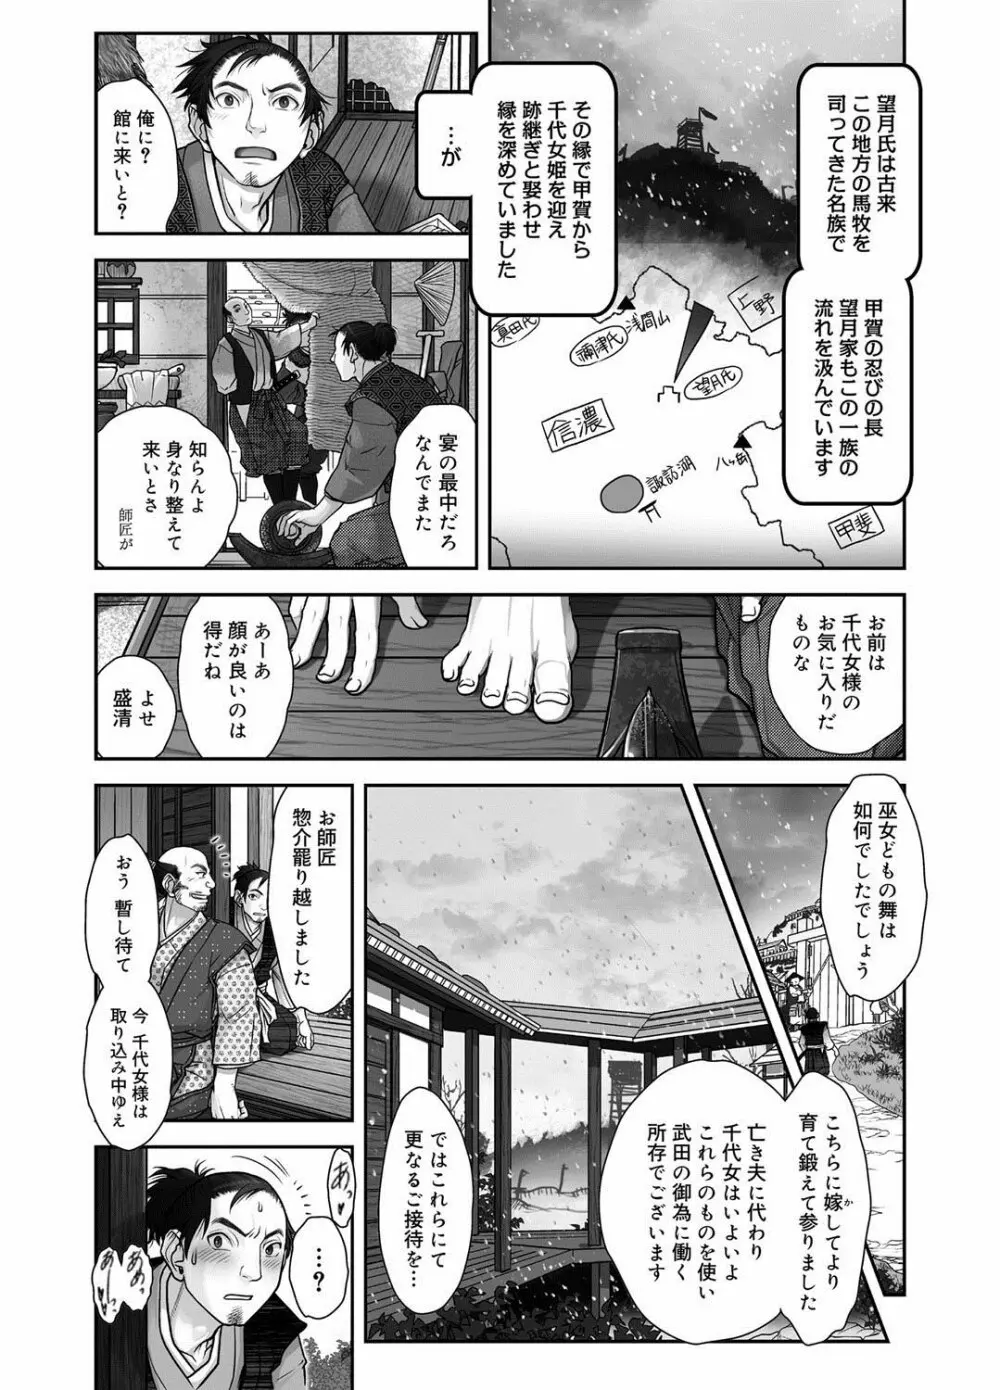 キャノプリ comic 2012年8月号 Vol.22 228ページ